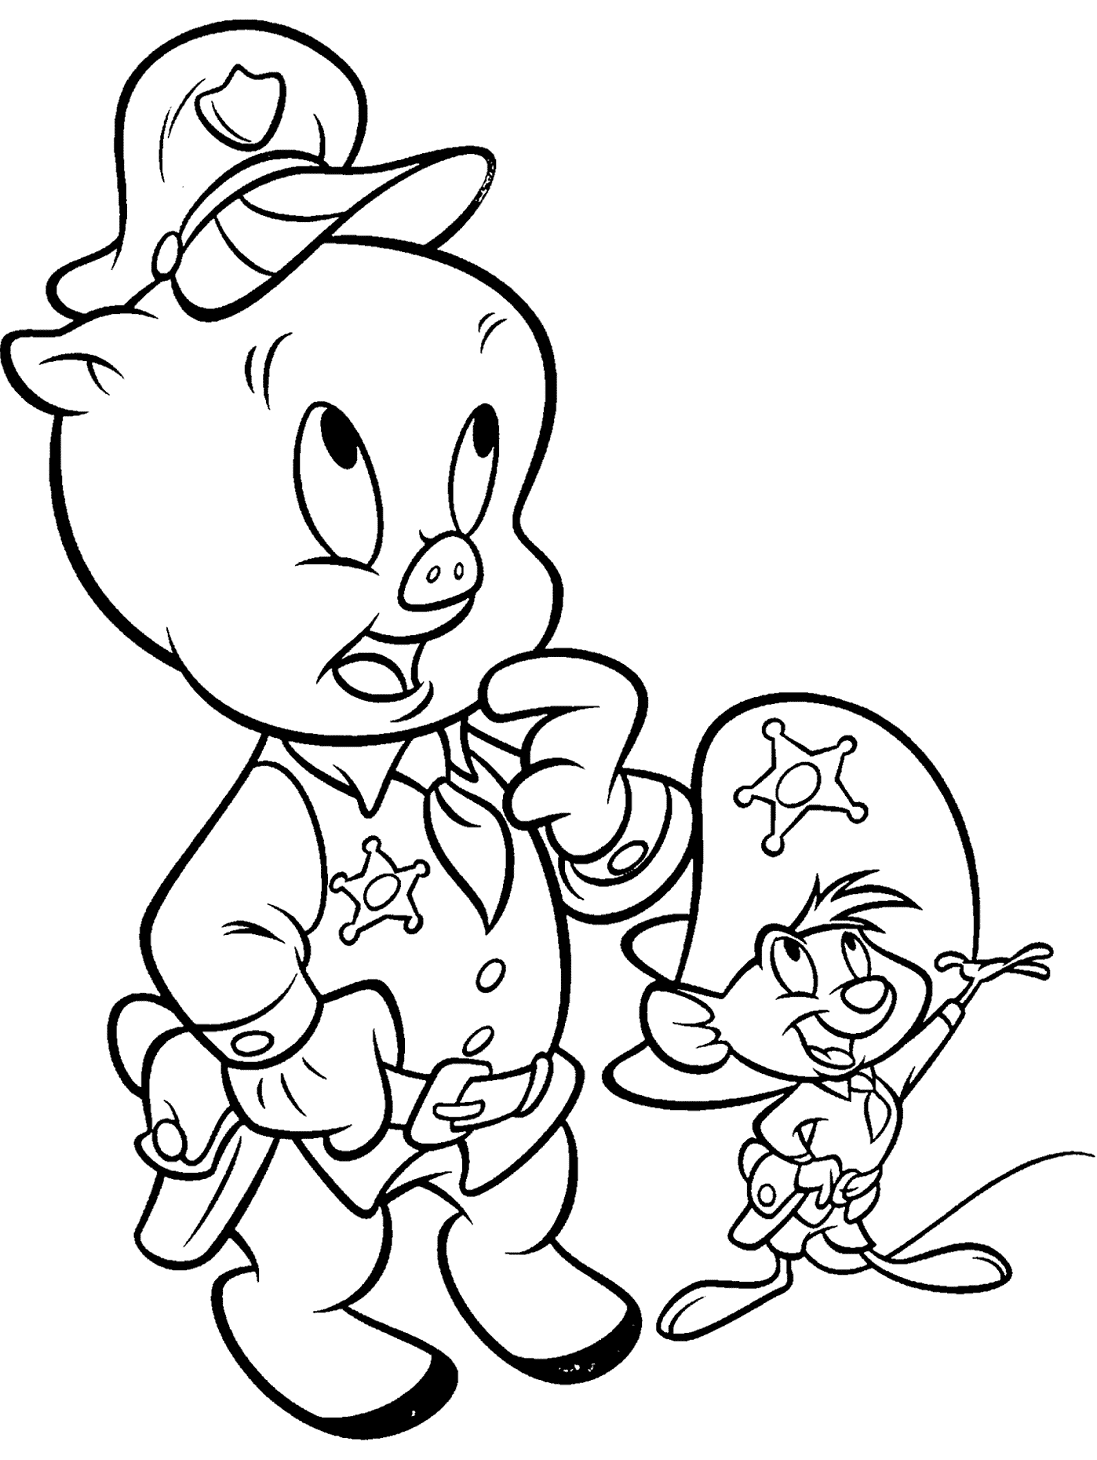 Porky Pig et Speedy Gonzalez des personnages de Looney Tunes